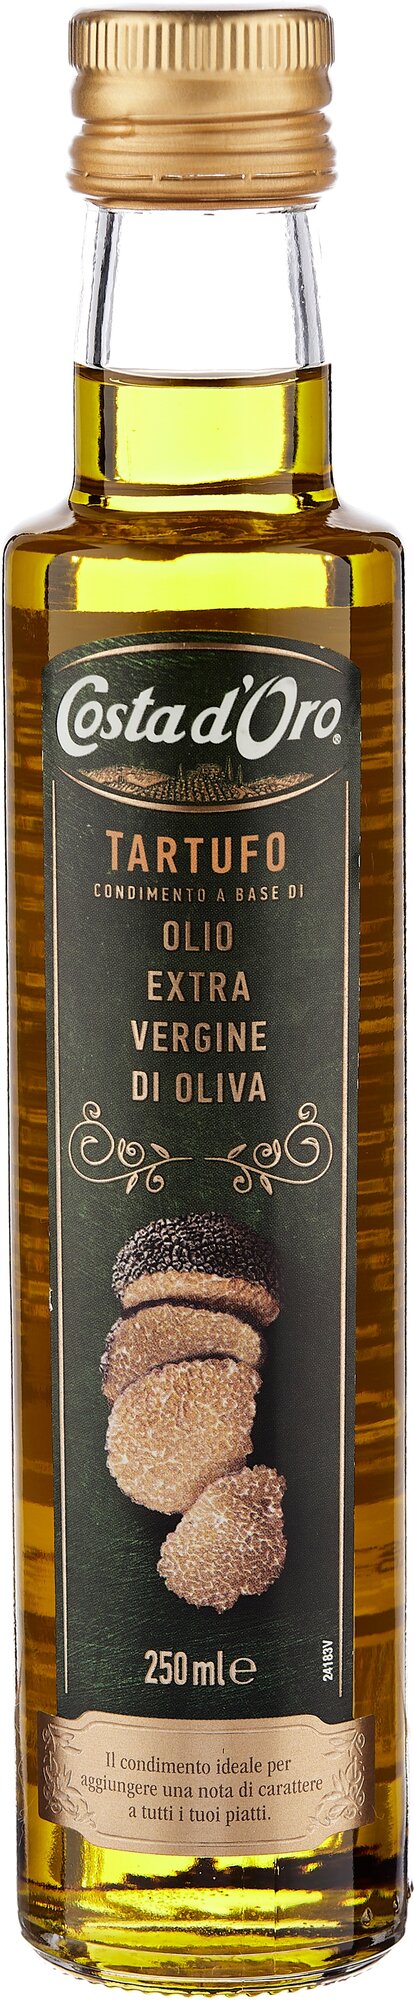 Оливковое масло Costa d'Oro Tartufo Extra Virgin нерафинированное с ароматом трюфеля, 250 мл